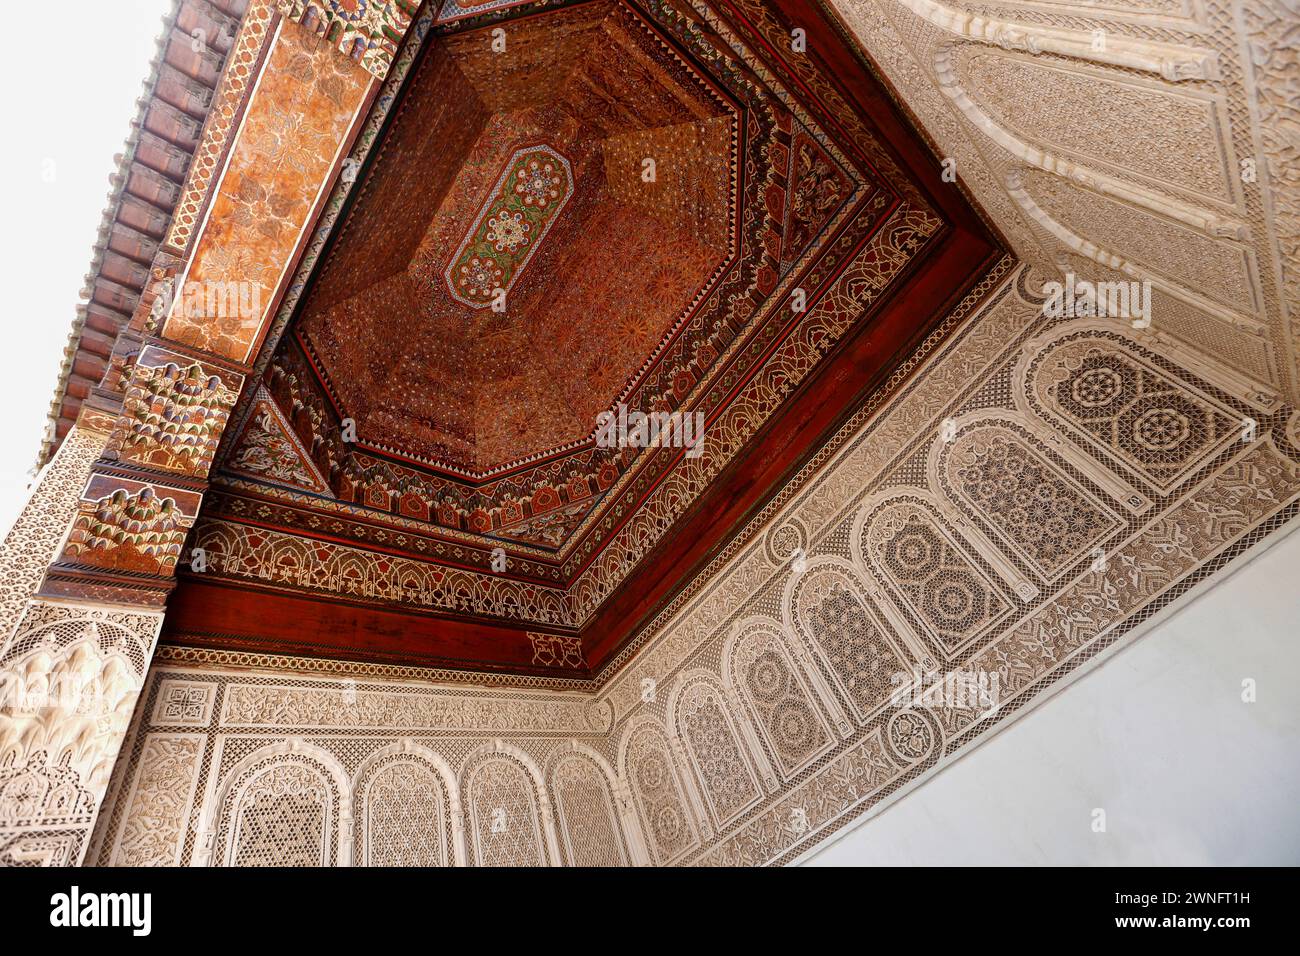 Marrakech, Maroc - 27 mai 2019 : plafond décoré de bois sculpté sur Palace Bahia, lieu touristique dans la vieille ville de Marrakech, Maroc Banque D'Images